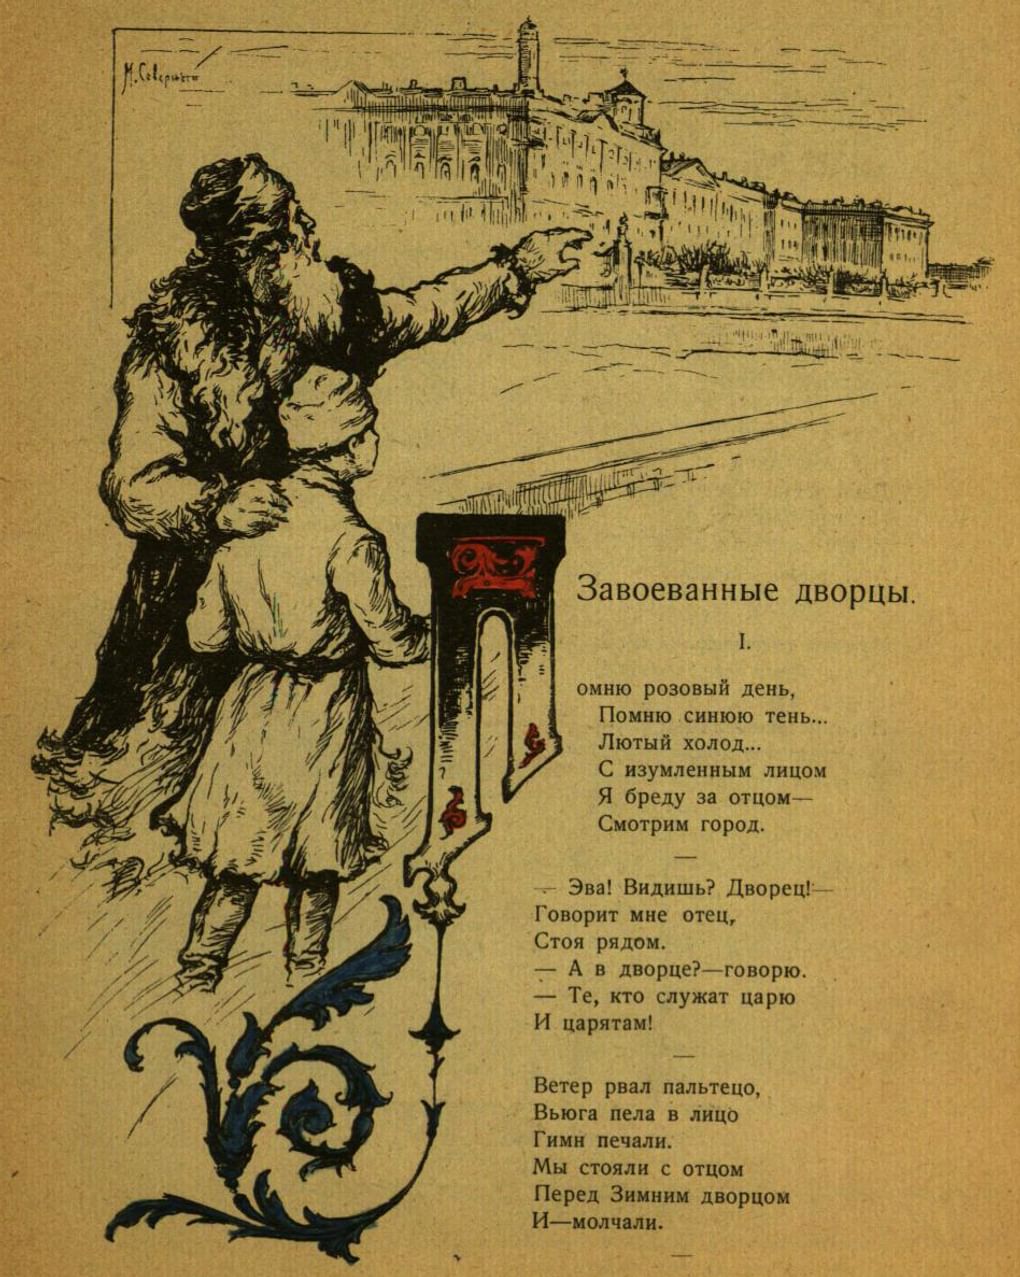 Журнал «Новый Робинзон» № 1. Ленинград: издание Ленинградской «Правды», 1925